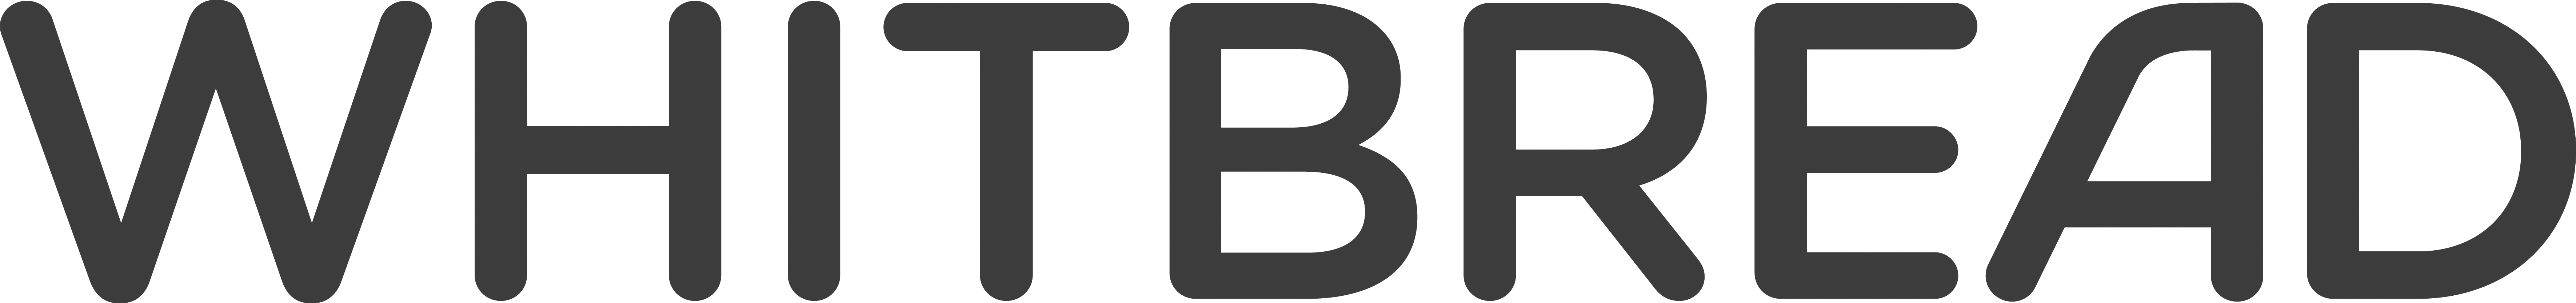 whitbread-logo